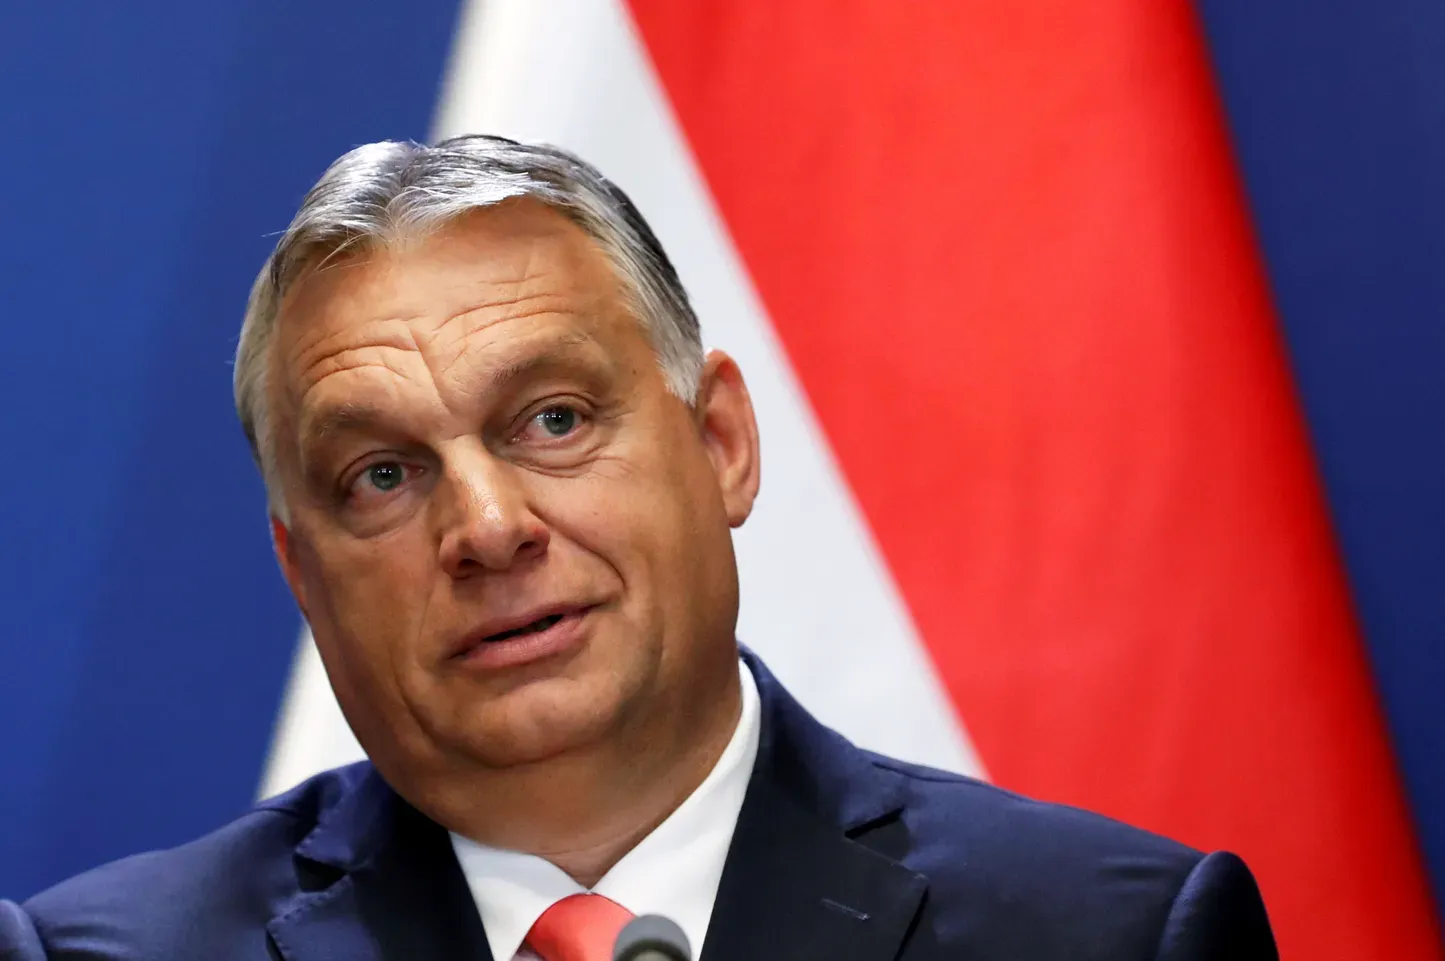 
											
											Руслар Орбаннинг тинчлик миссиясига умид боғлашмоқда
											
											